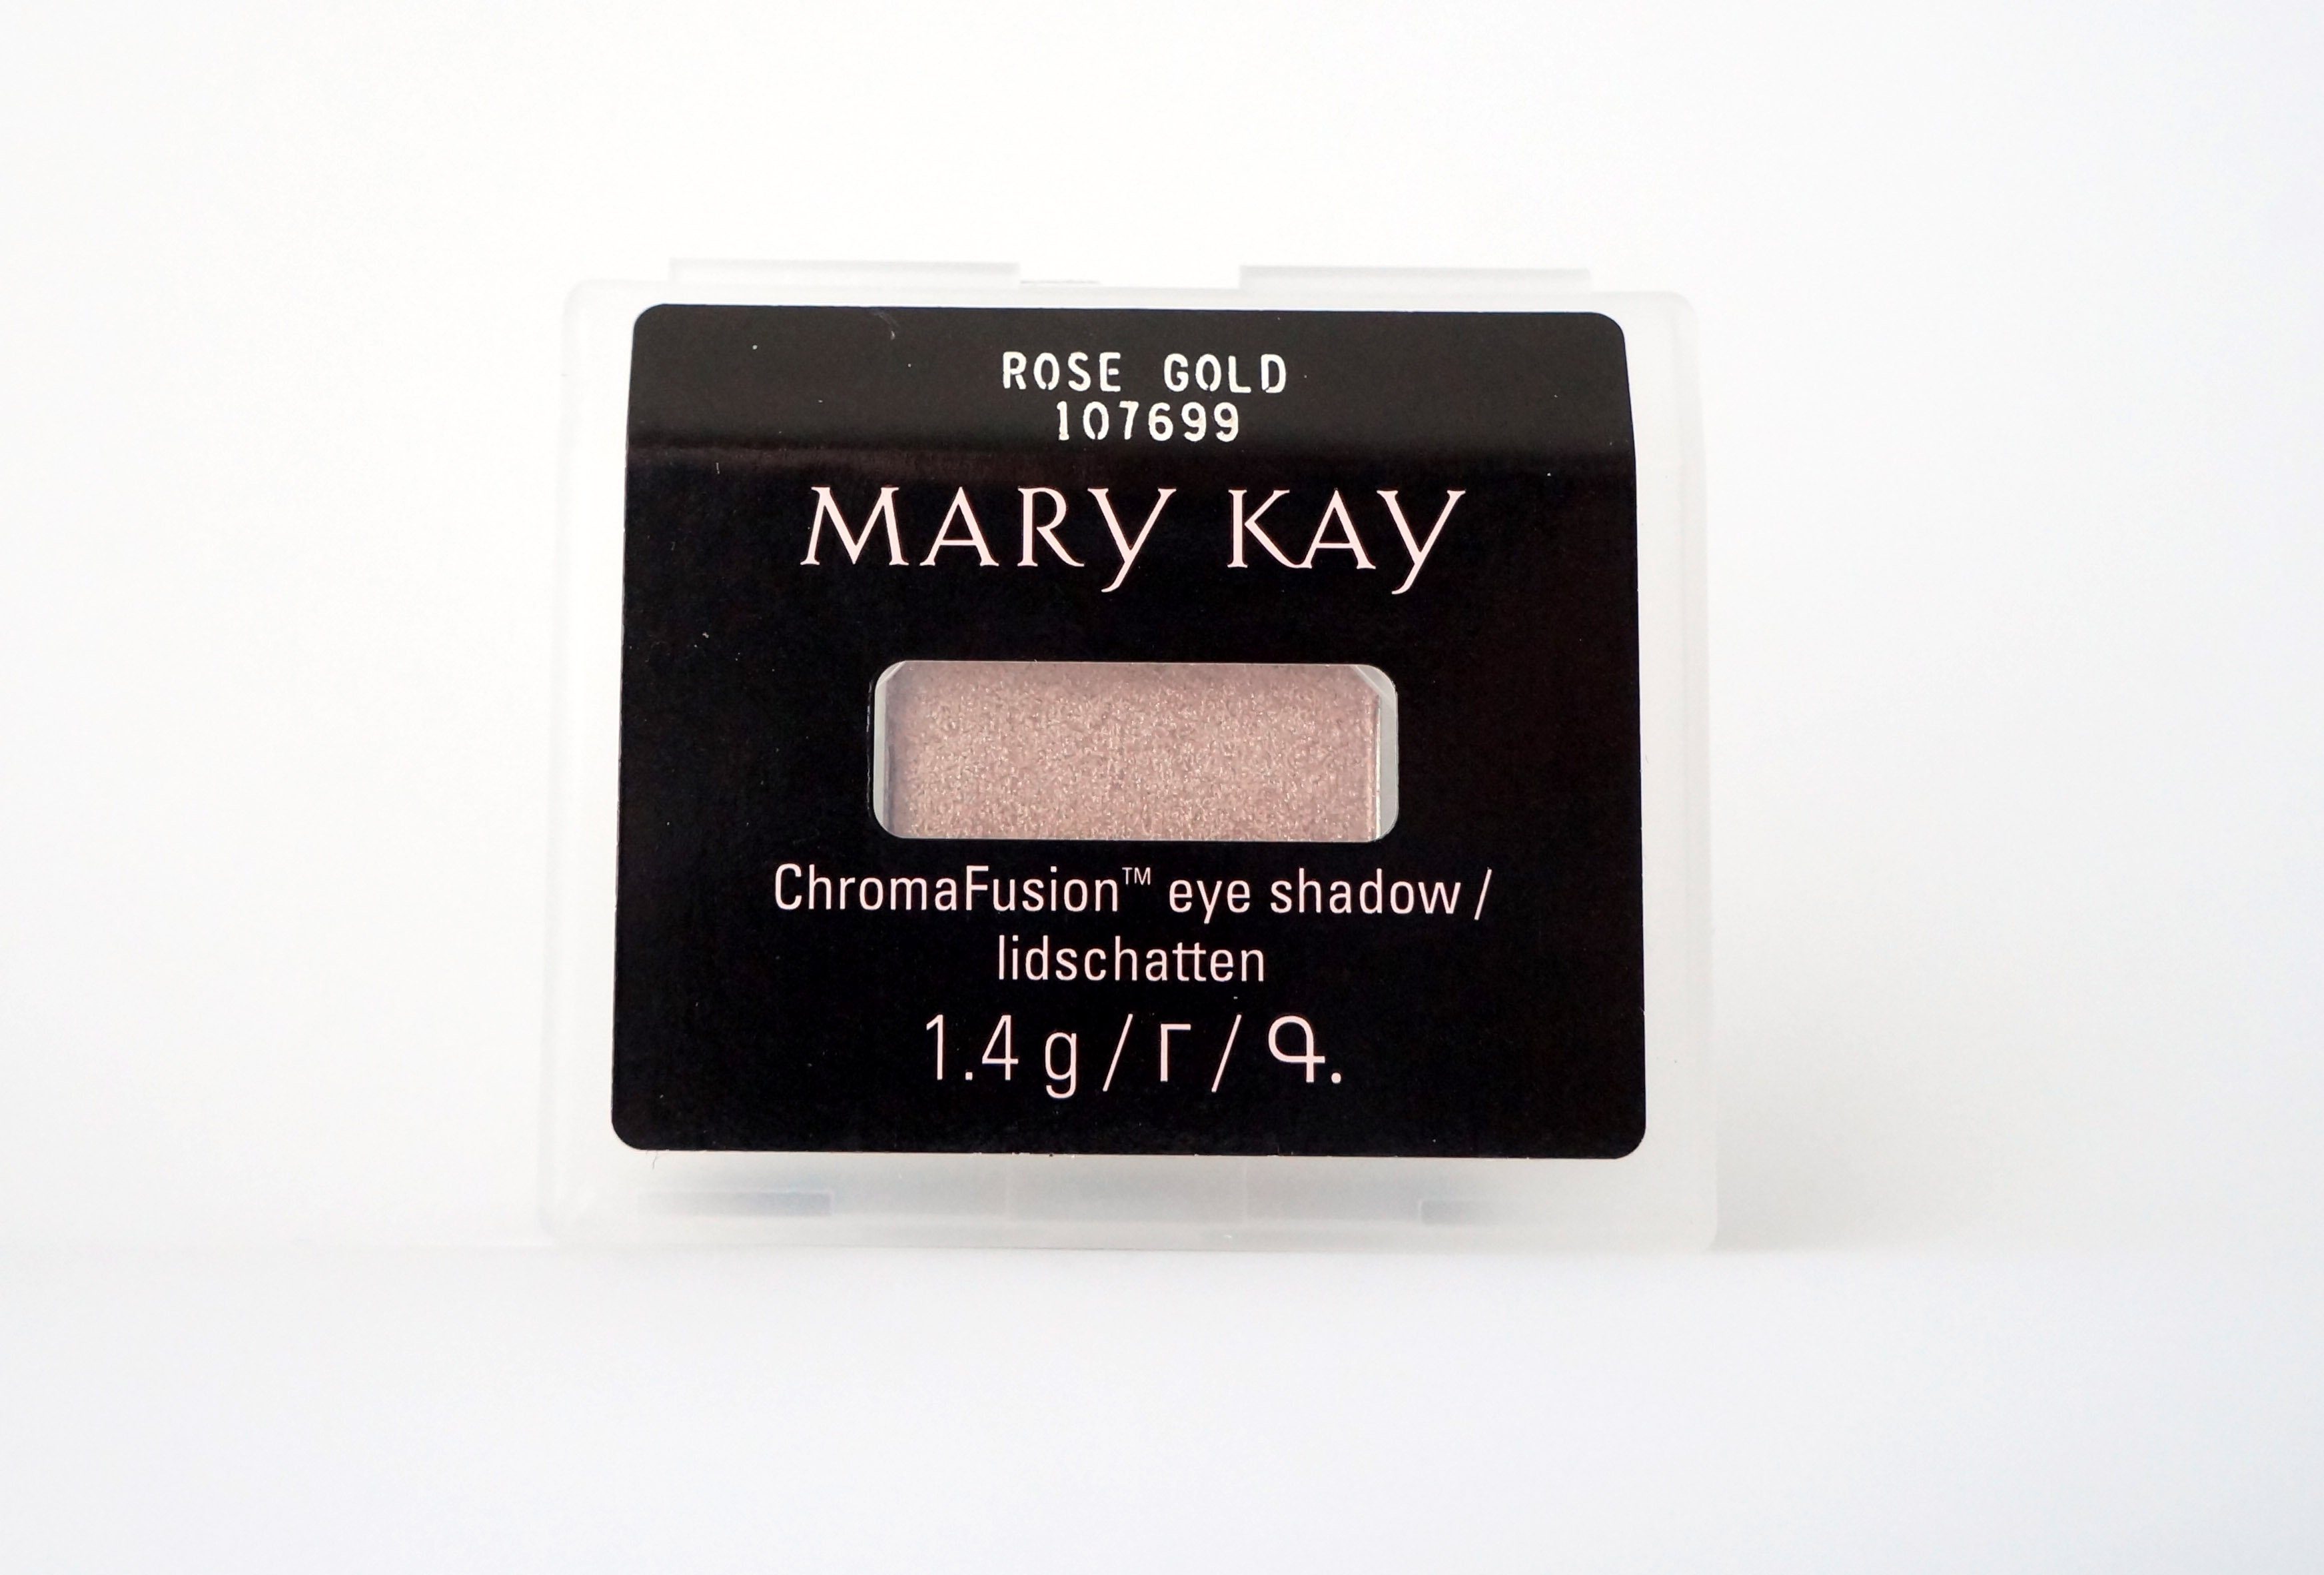 Mary Kay Lidschatten Chromafusion Eye Shadow Lidschatten 1,4g